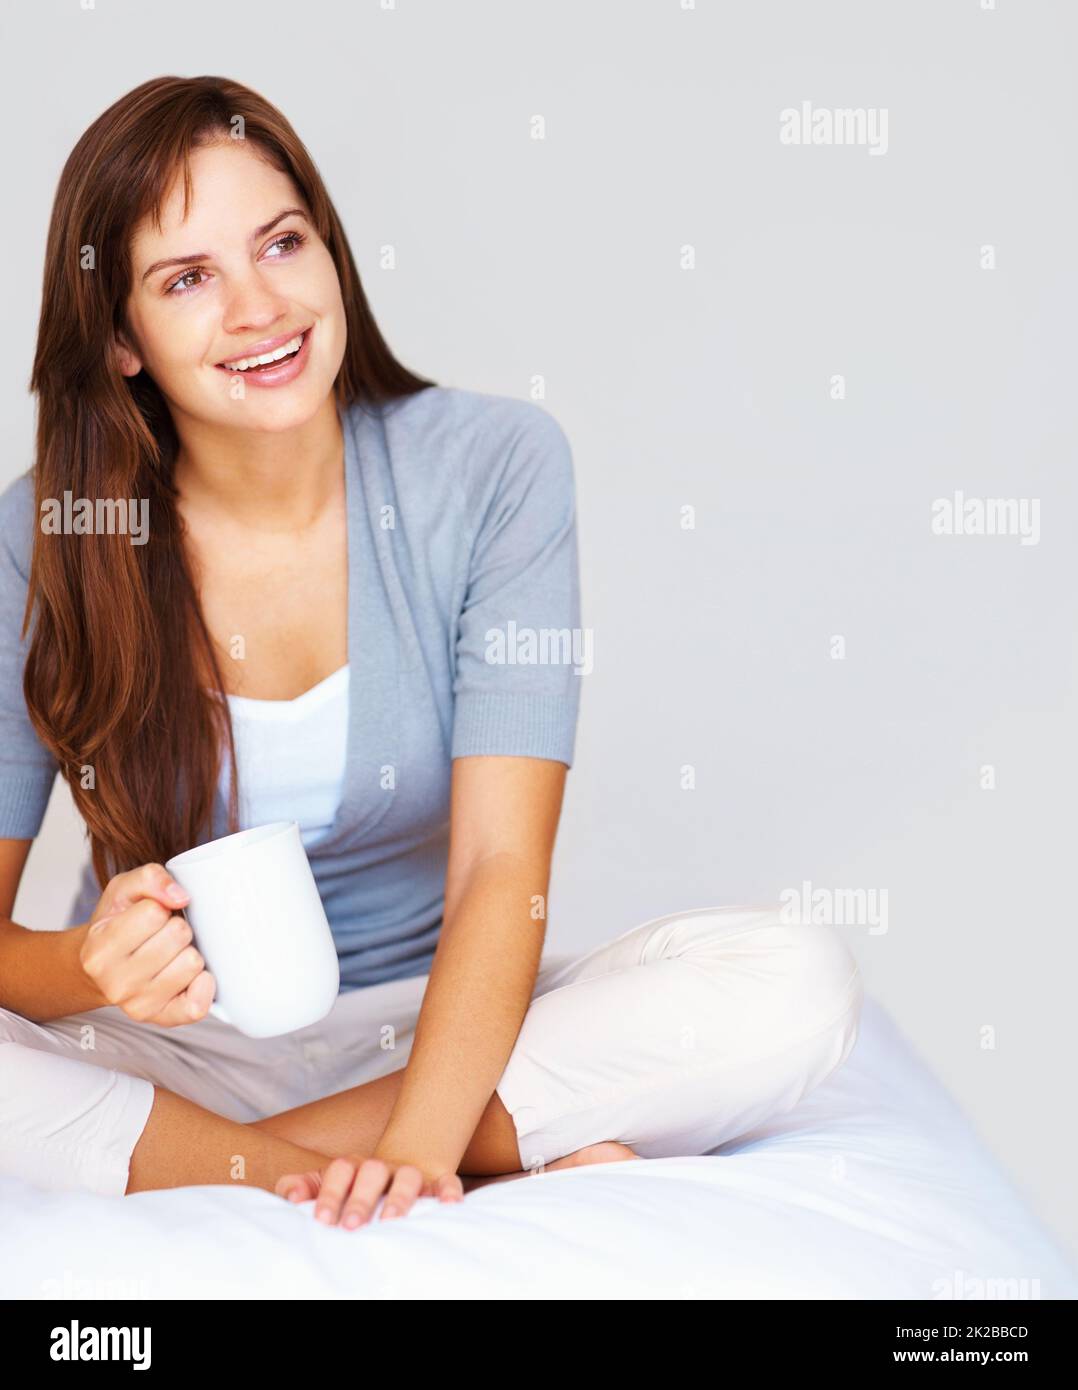 Nette, entspannte Frau, die Kaffee trinkt und in Gedanken wegschaut. Glückliche, nachdenkliche Frau, die die Beine gekreuzt auf dem Bett sitzt und eine Tasse Kaffee trinkt. Stockfoto